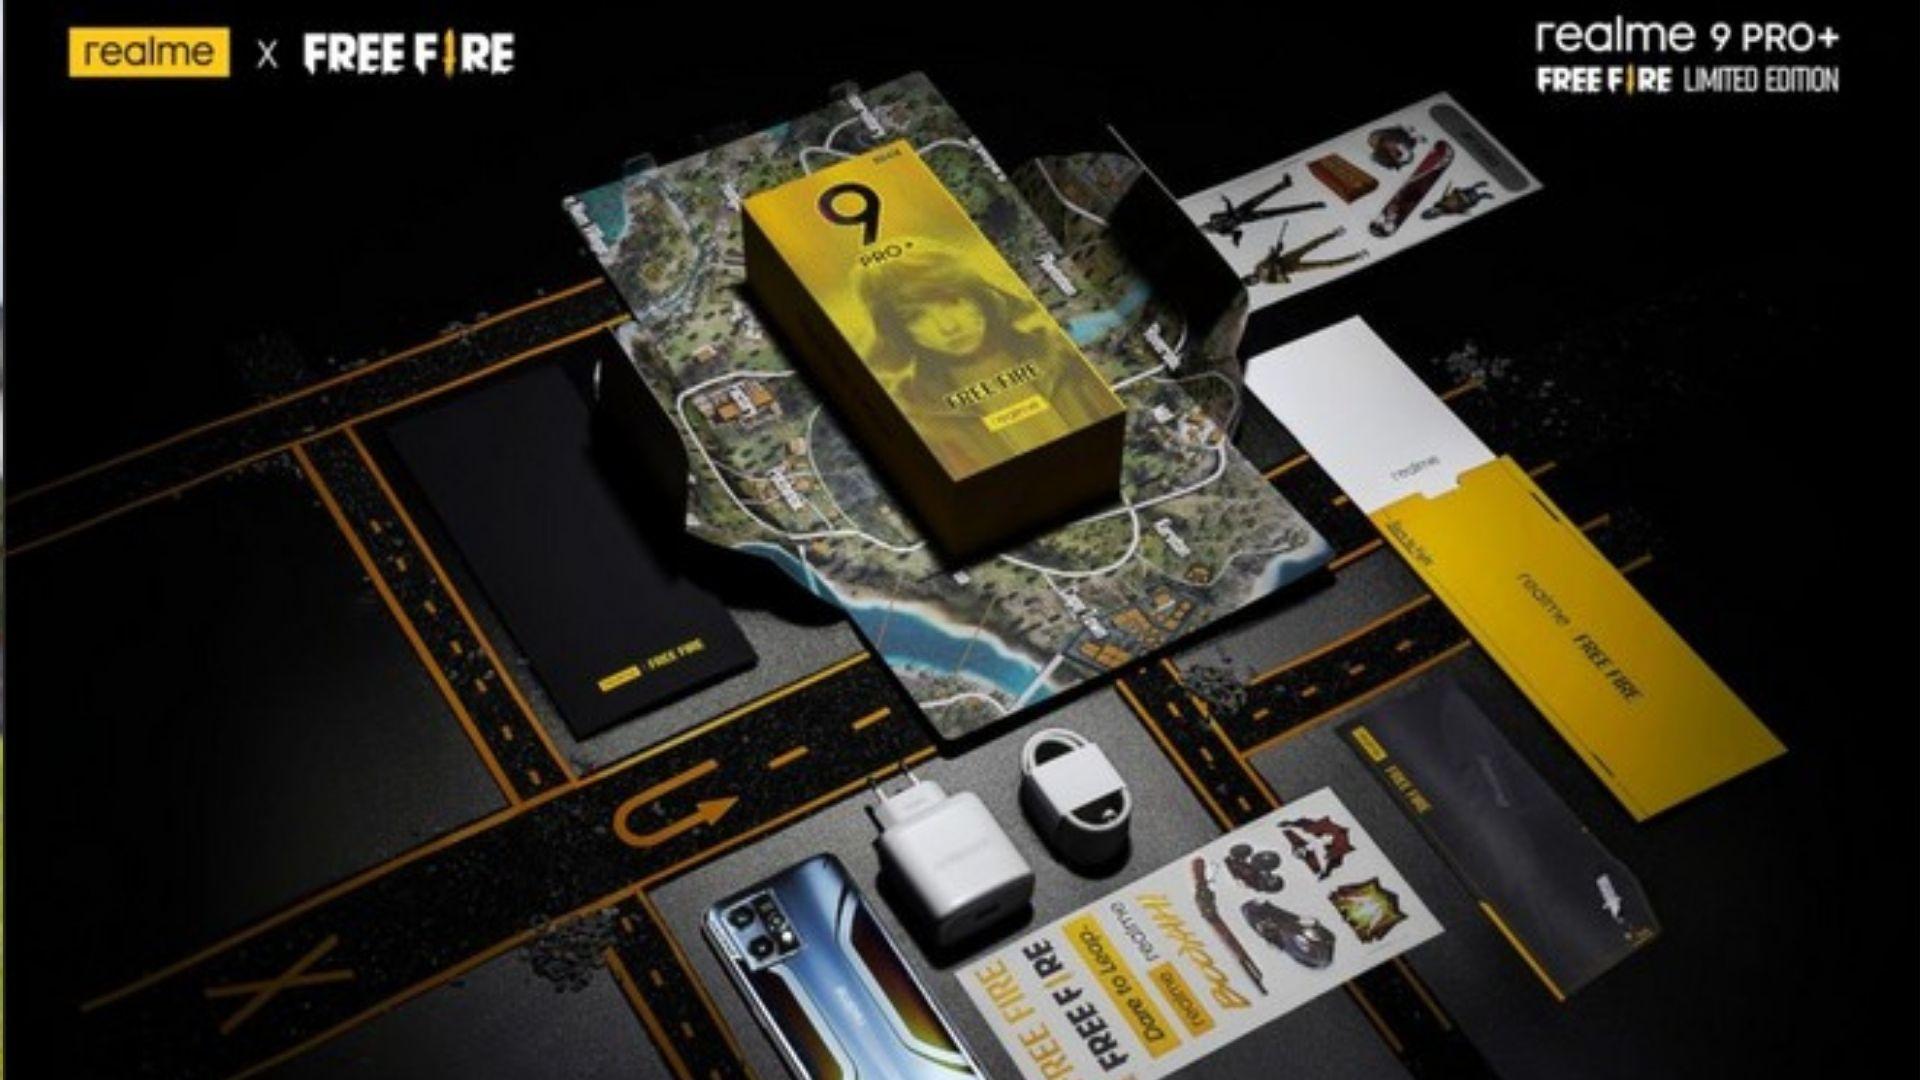 Realme 9 Pro Plus edição Free Fire começa a ser vendido na Shopee